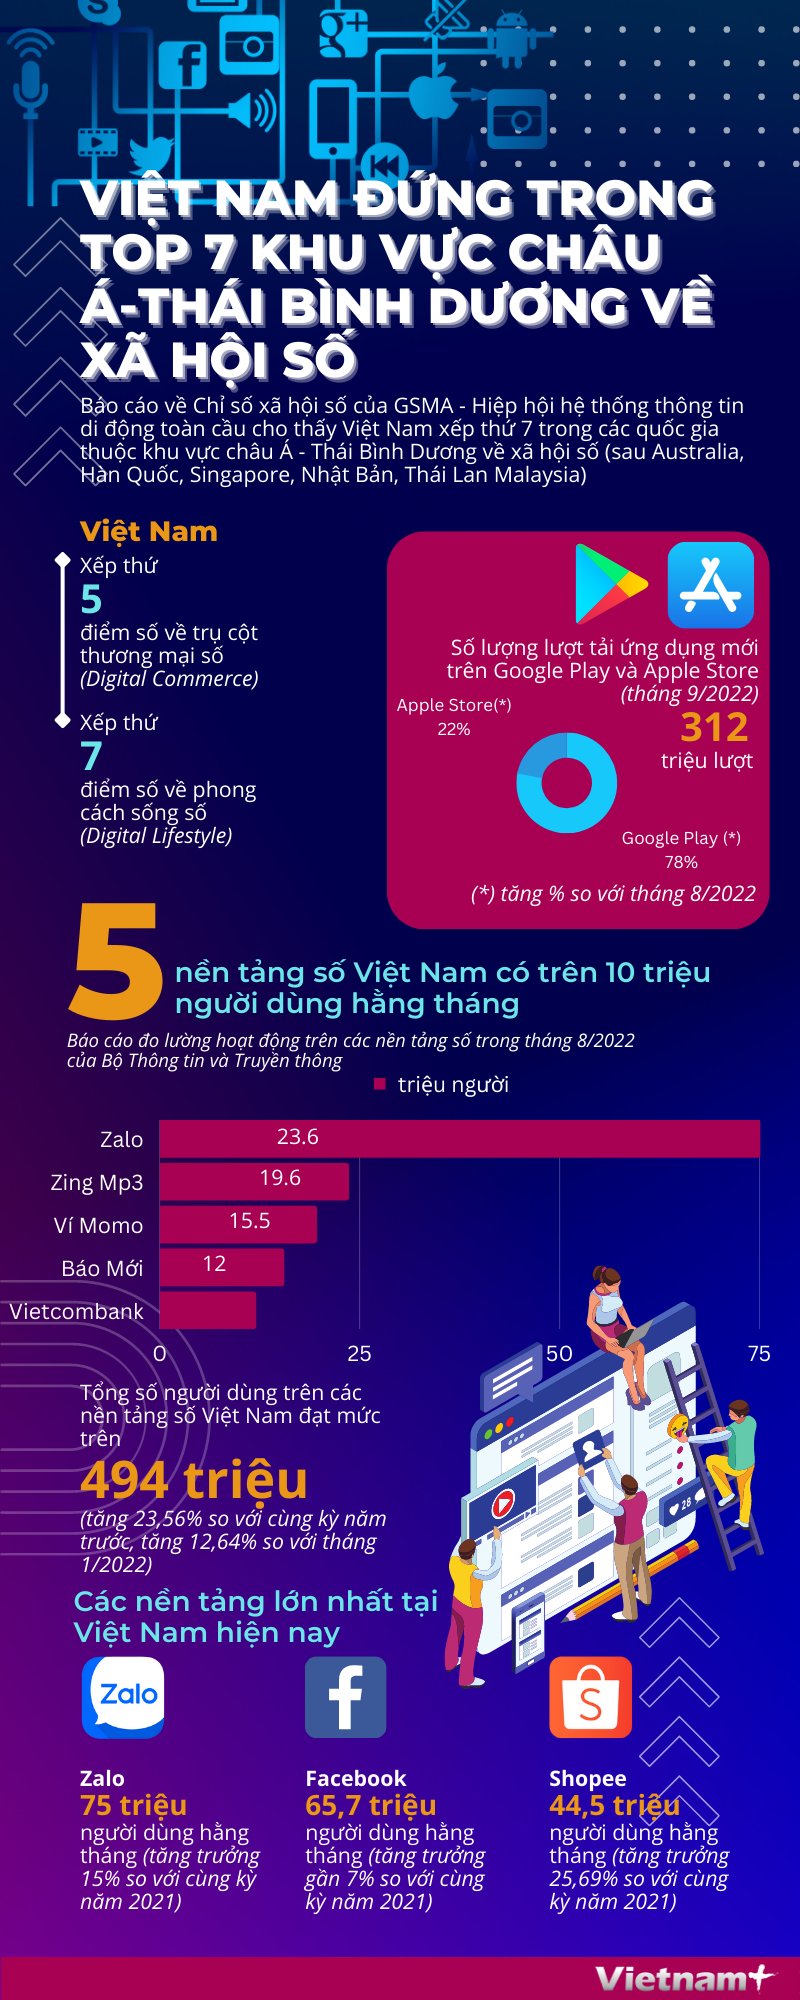 Việt Nam nằm trong top 7 khu vực châu Á-Thái Bình Dương về xã hội số - Ảnh 1.